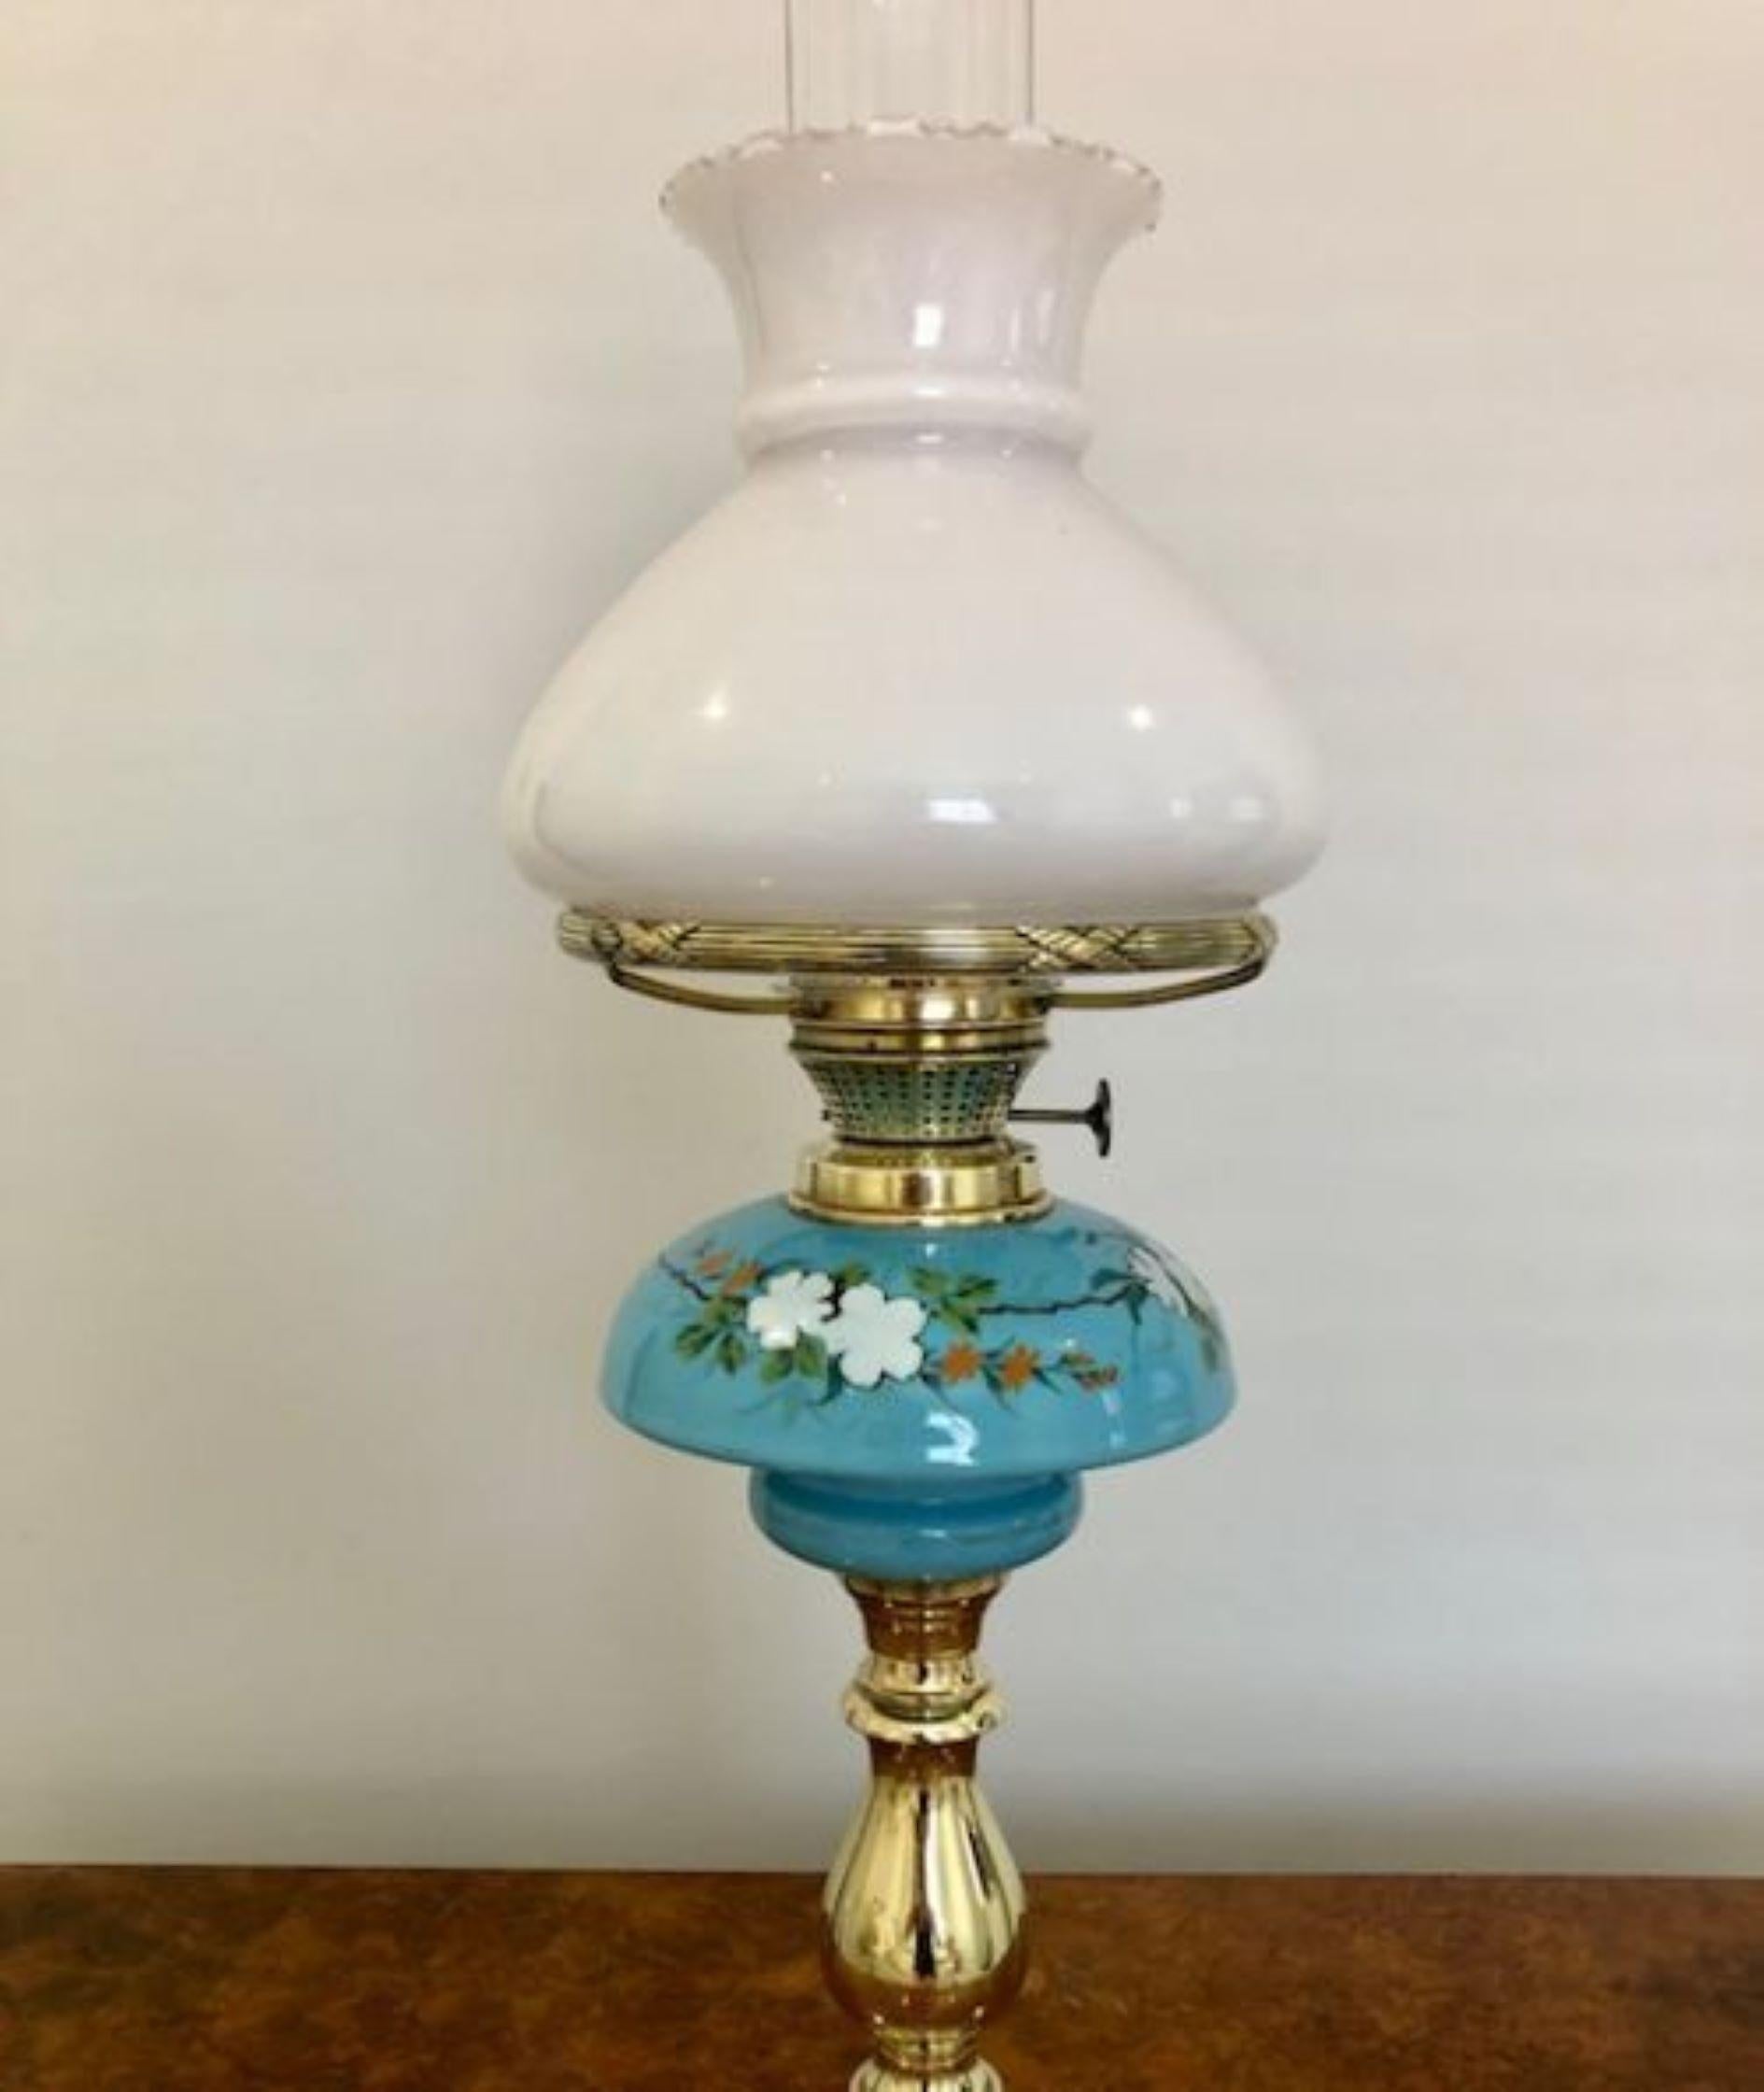 Hochwertige antike viktorianische Messing-Öllampe mit dem originalen weißen Glasschirm und einem blauen Keramikreservoir  getragen von einer verzierten Messingsäule 